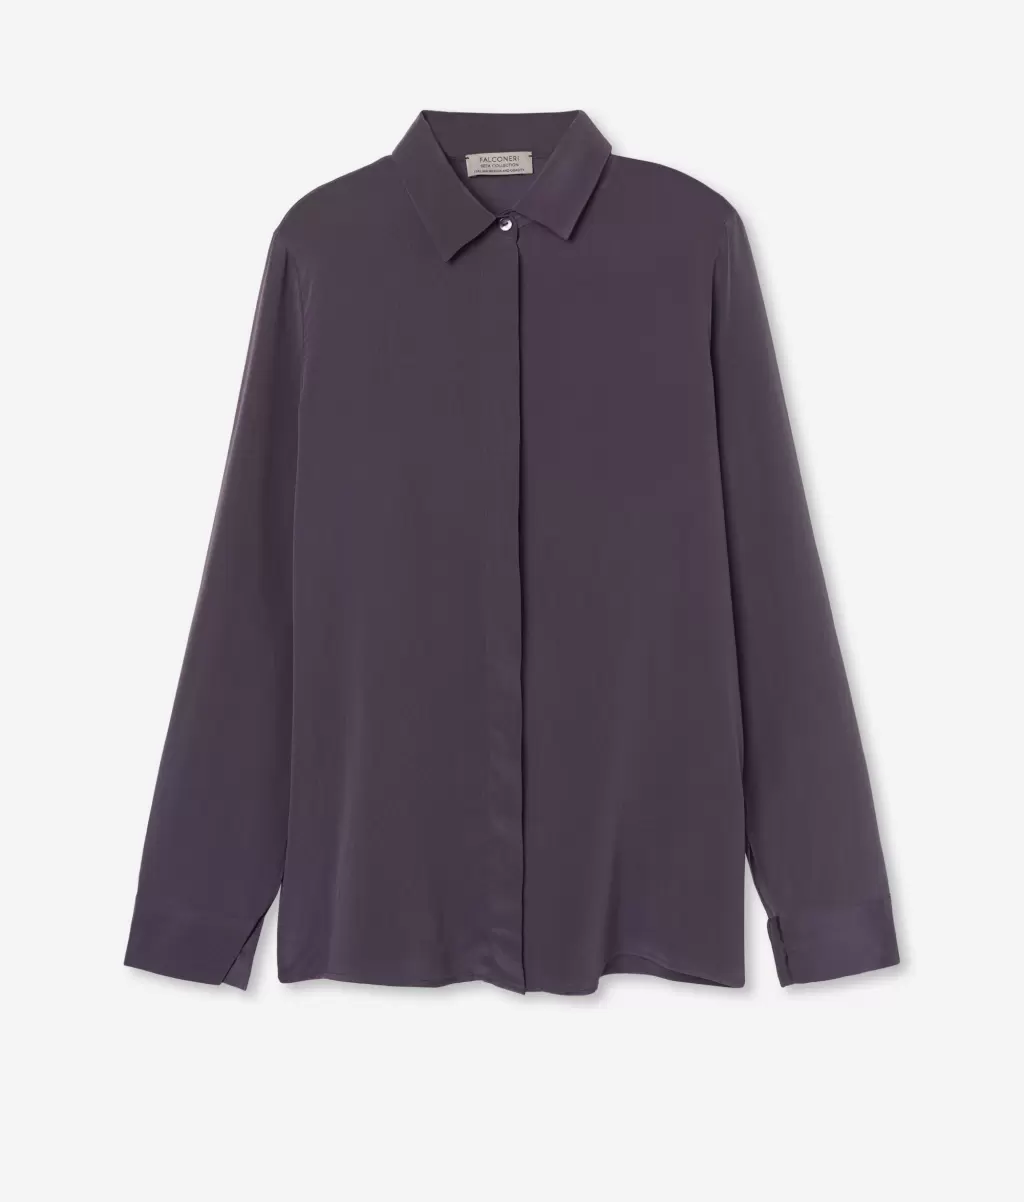 Falconeri Camisas E Blusas Violet Senhora Camisa De Seda Com Colarinho - 4